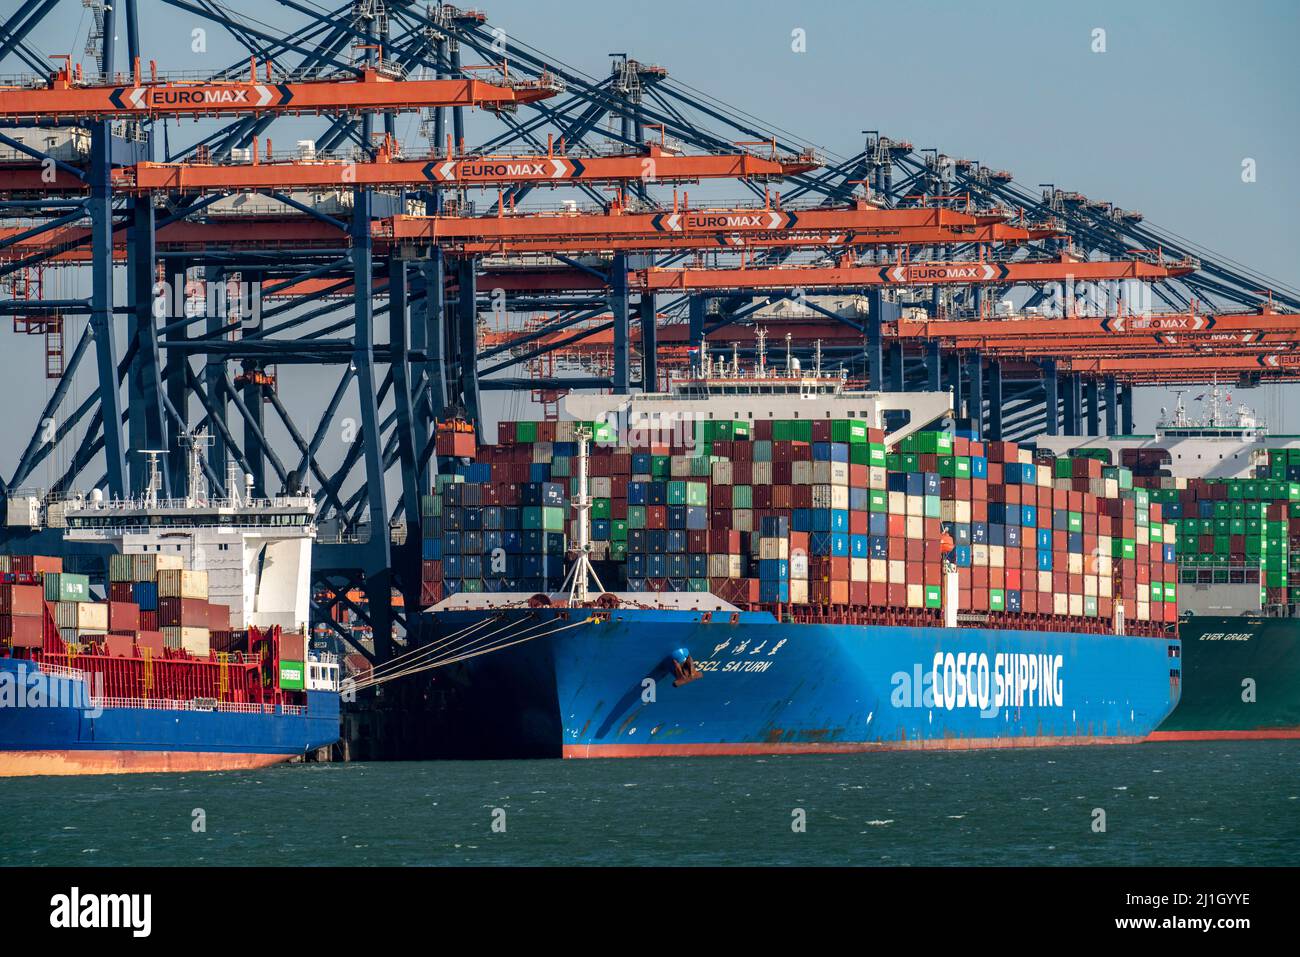 Euromax Container Terminal, container freighters, nel porto marittimo di Rotterdam, Paesi Bassi, porto di mare profondo Maasvlakte 2, su una lan creata artificialmente Foto Stock